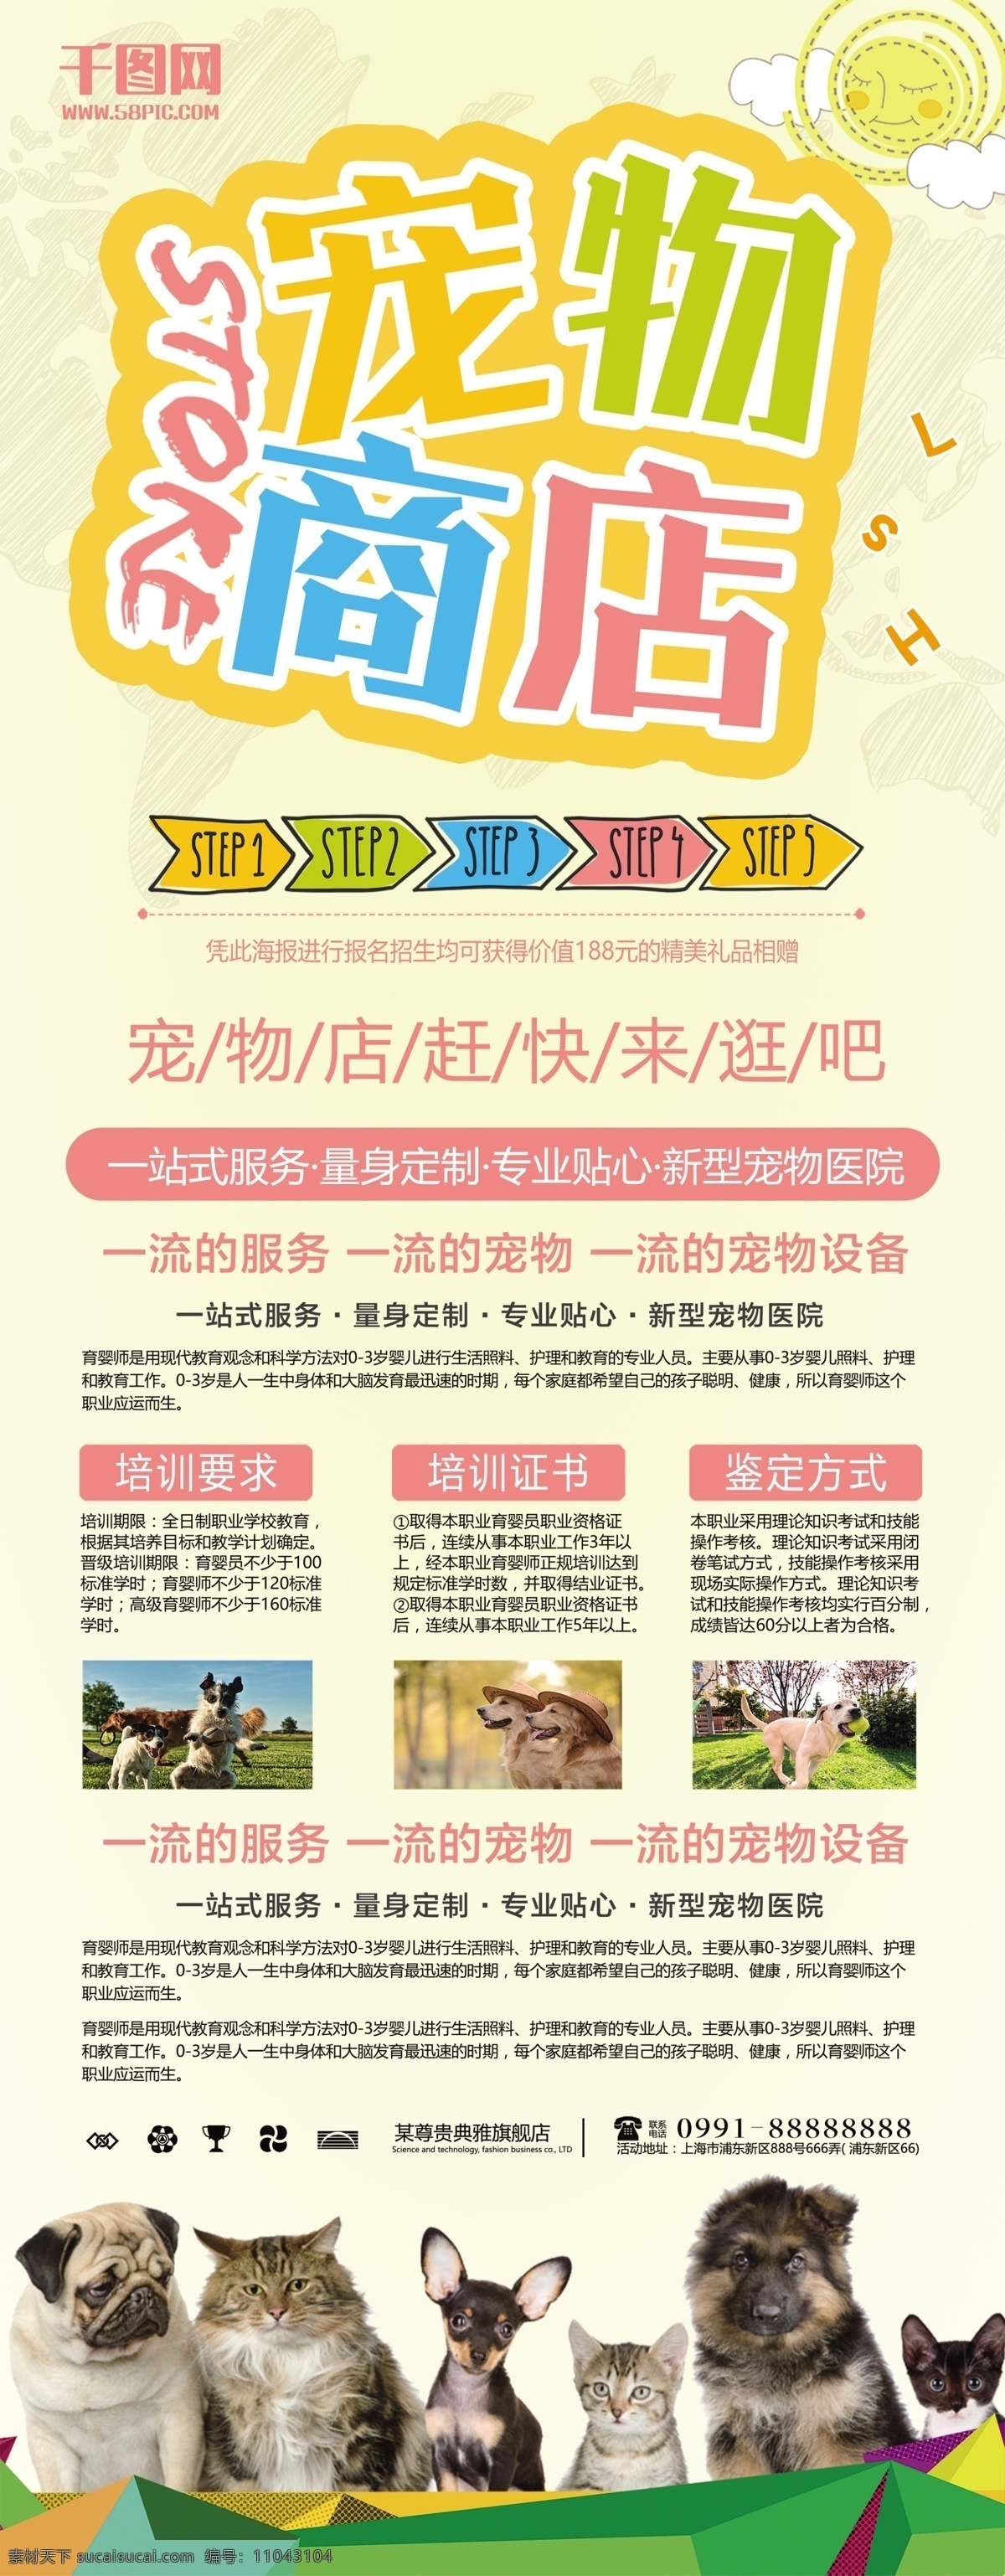 小 清新 宠物 商店 宣传海报 宠物医院 宠物店 猫 狗